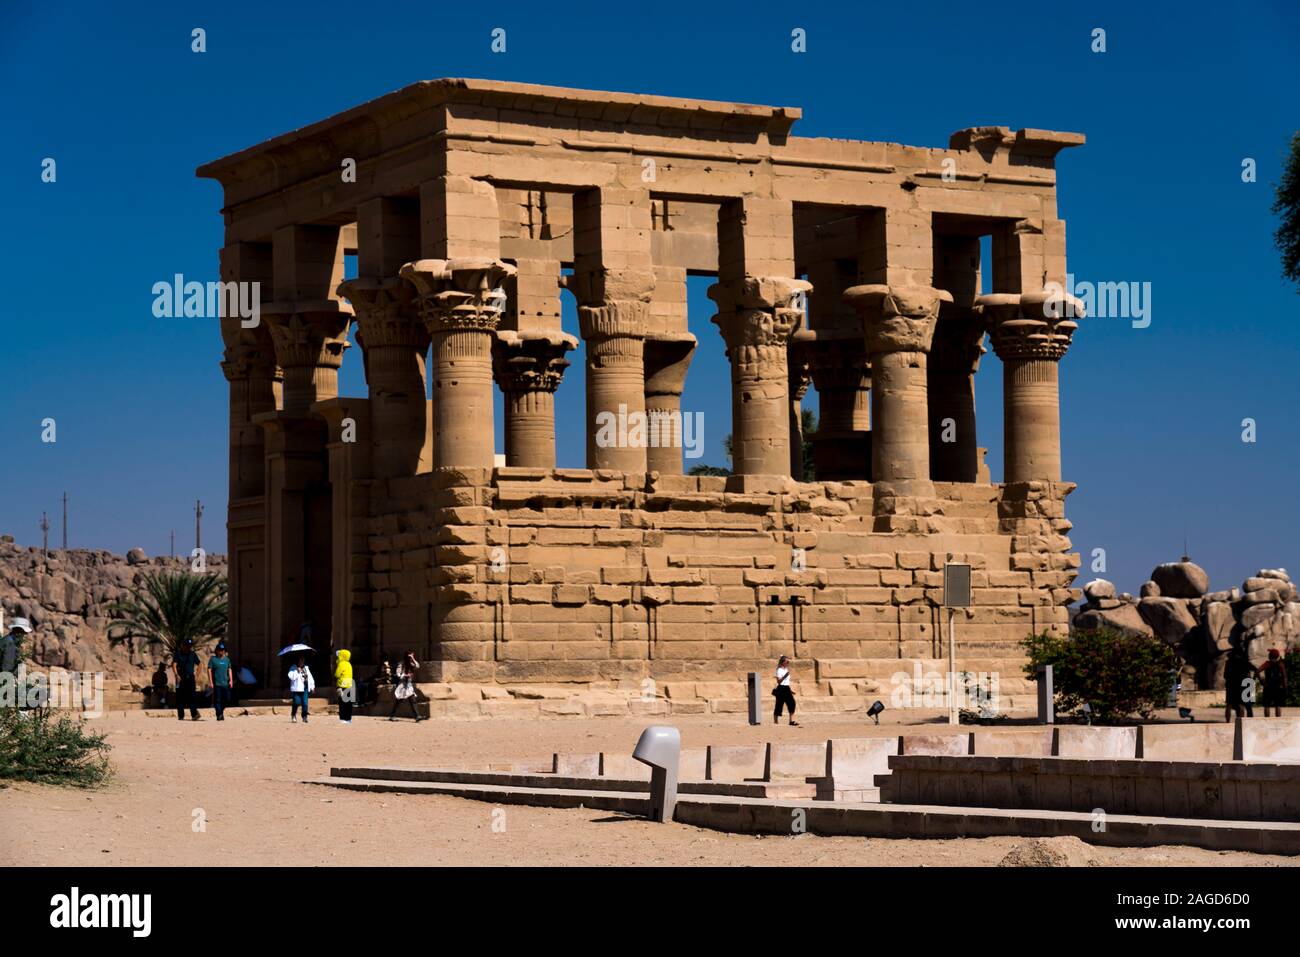 NOVEMBER 15, 2019, LAKE NASSER, ÄGYPTEN - Philae Tempel liegt auf einer Insel des Assuan niedrigen Damm, hinter dem Aswan Dam und Lake Nasser, Ägypten Stockfoto